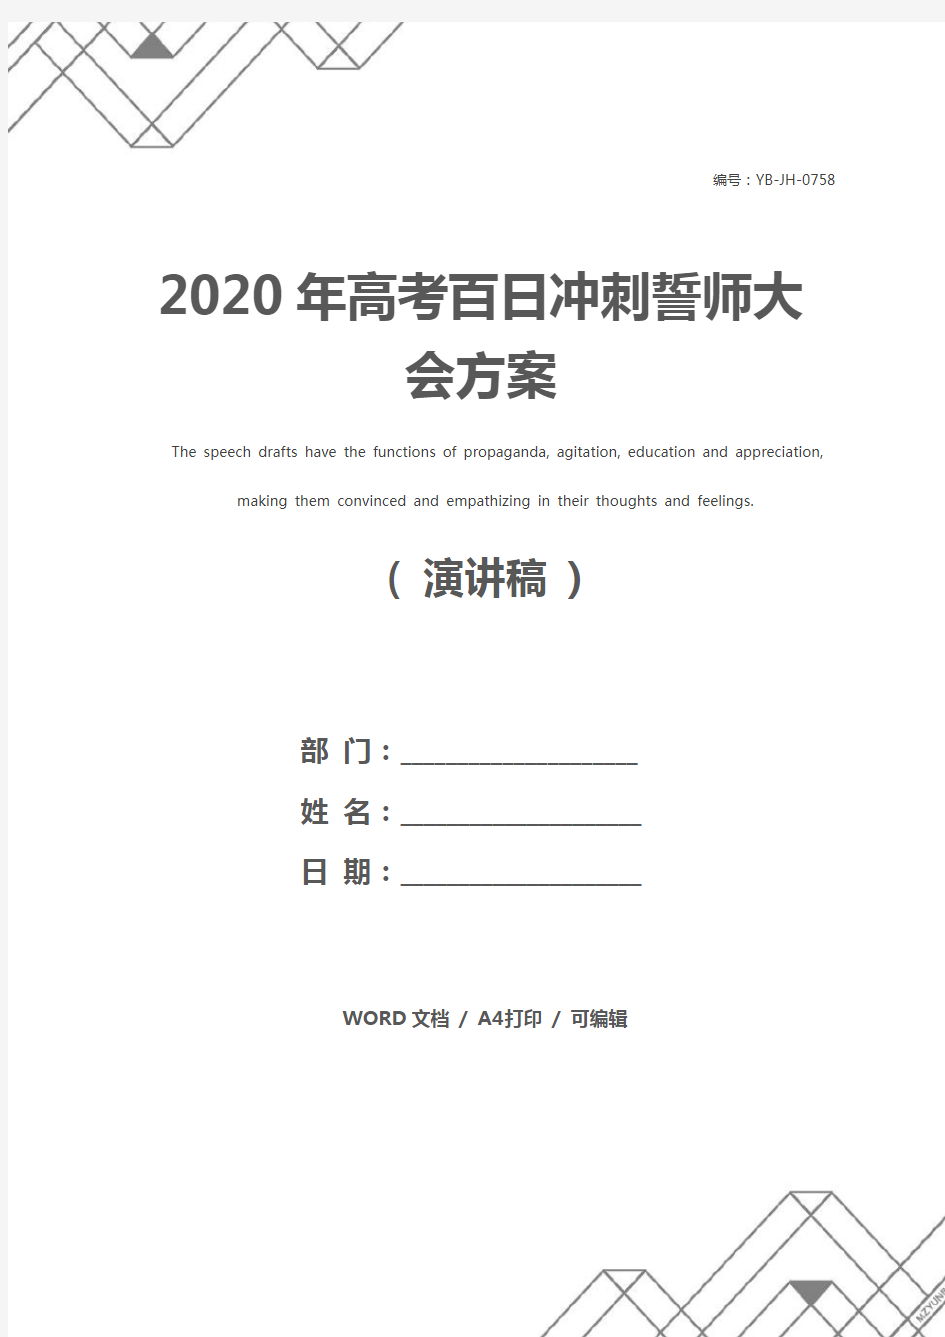 2020年高考百日冲刺誓师大会方案